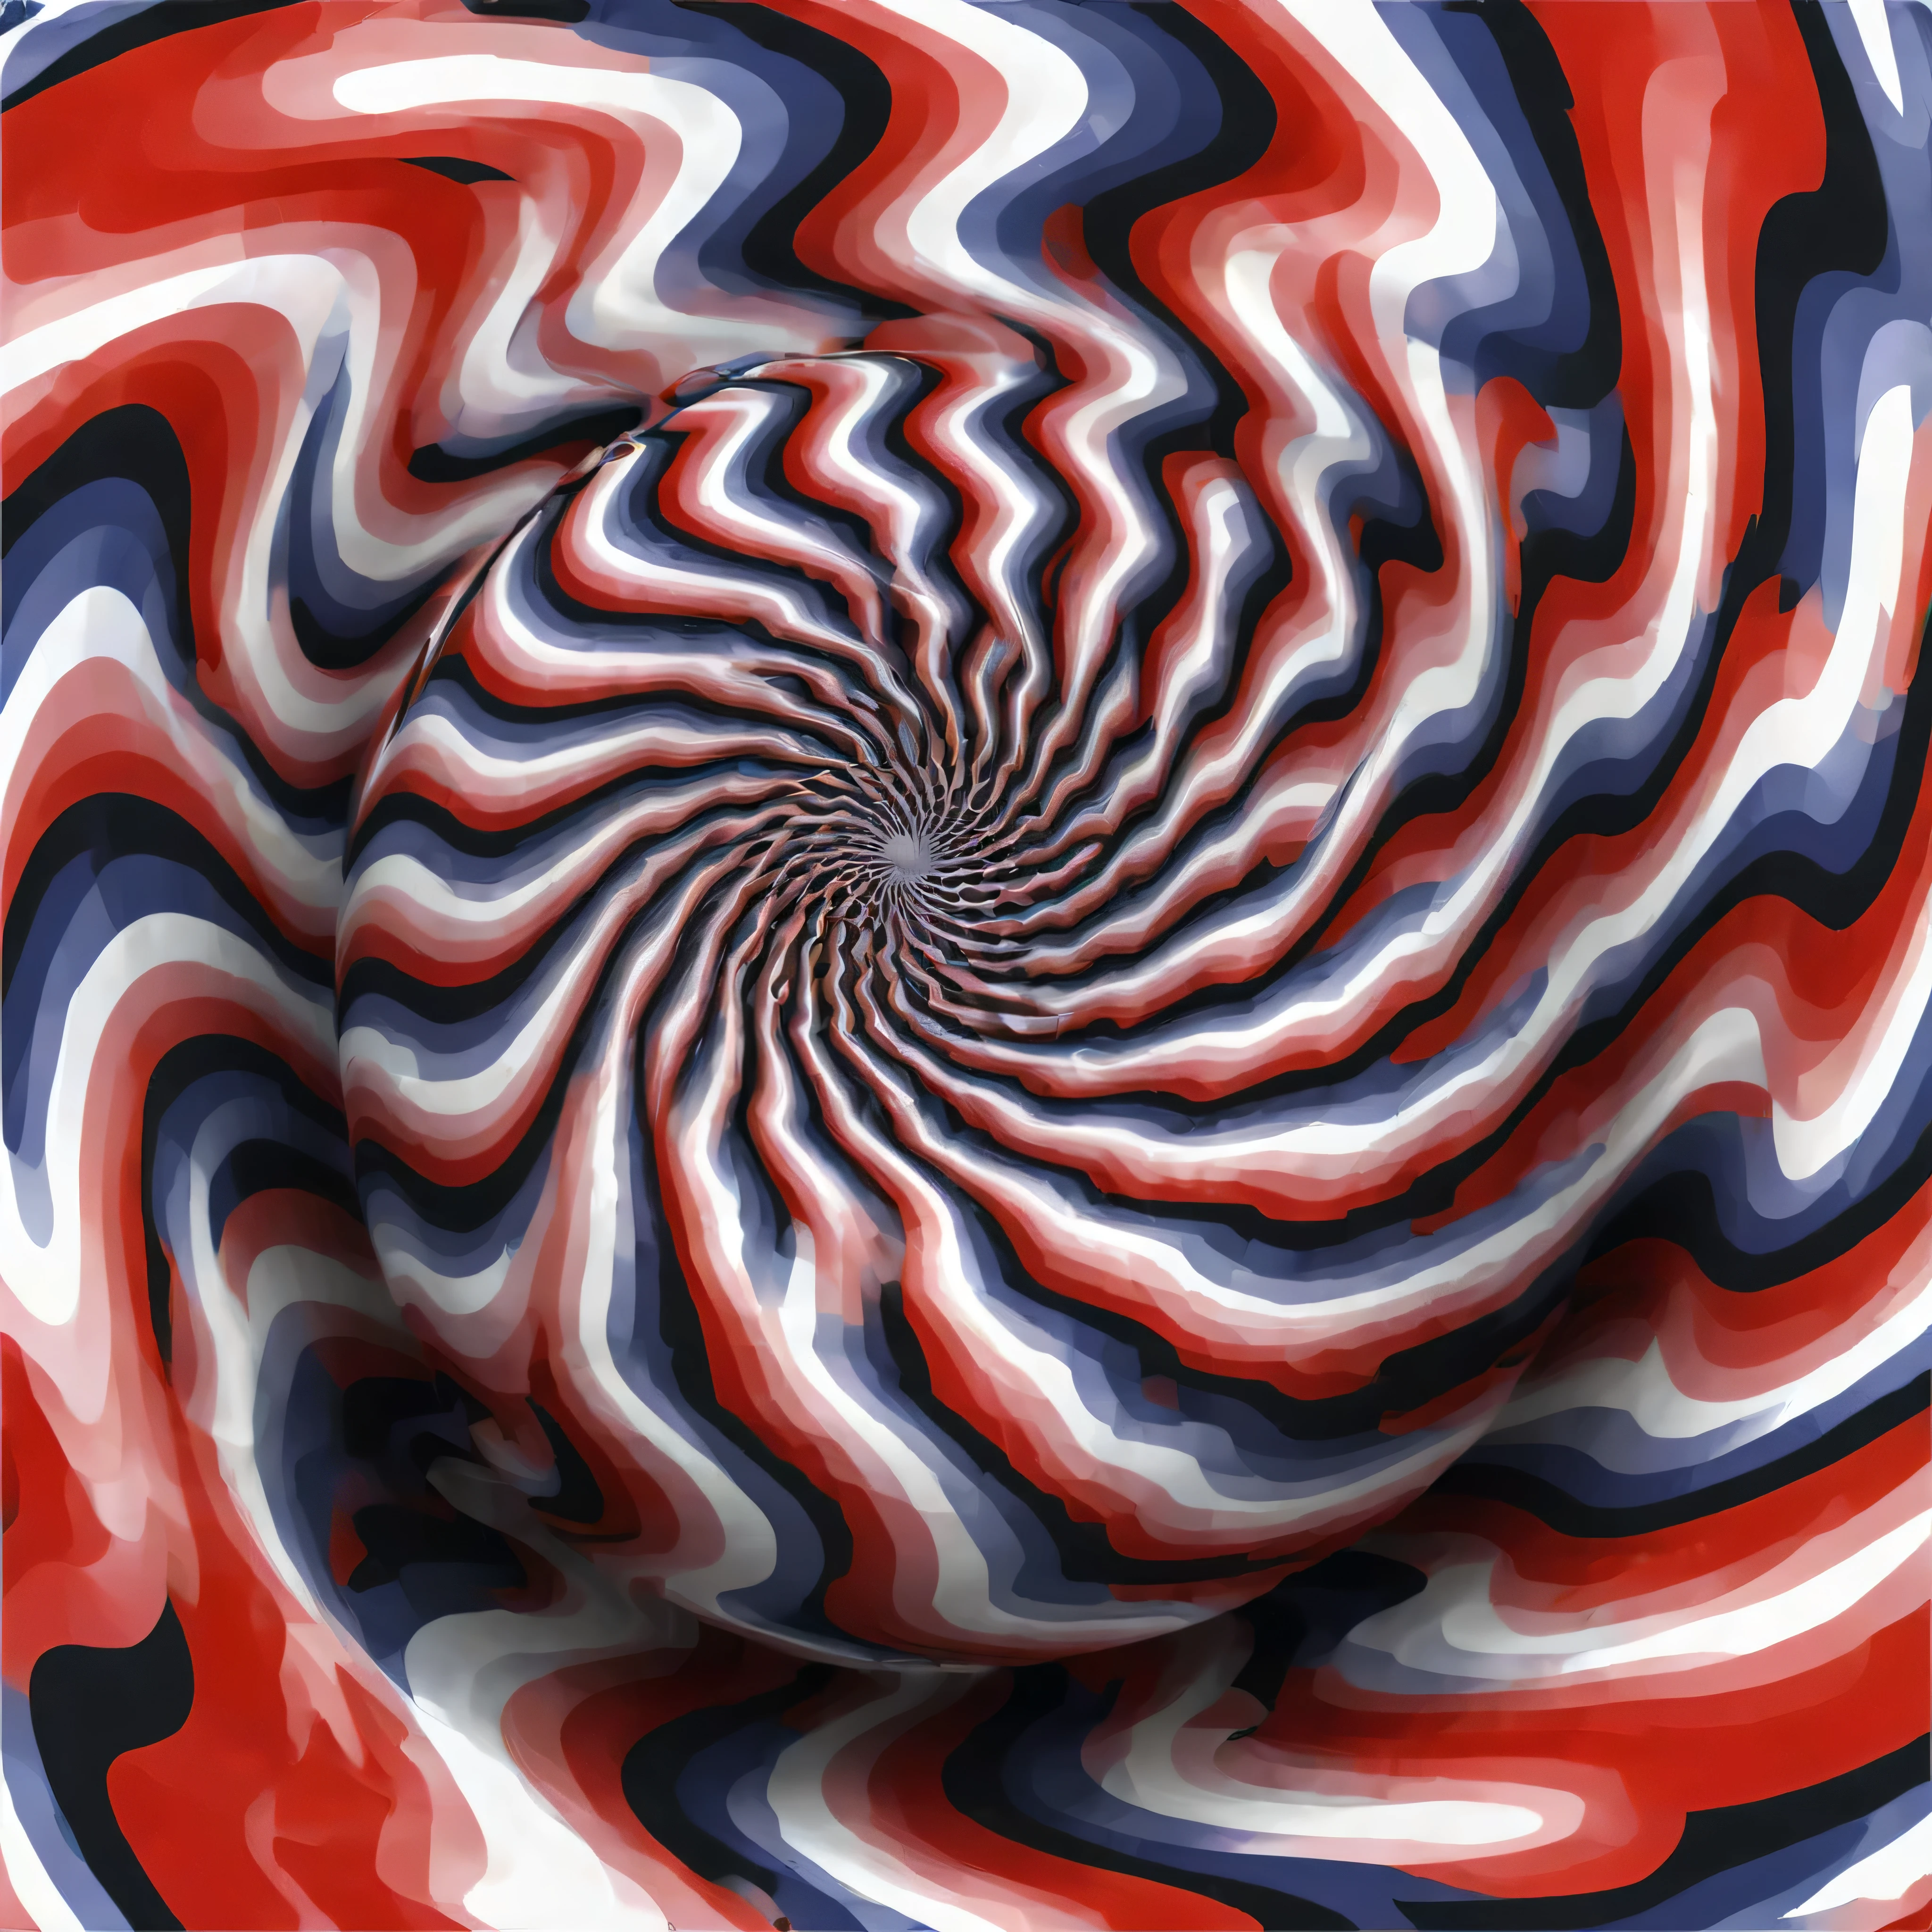 光学illusion，Optical illusion， Ottie, illusion, move, spinning, spiral, ball, eddy, rotate